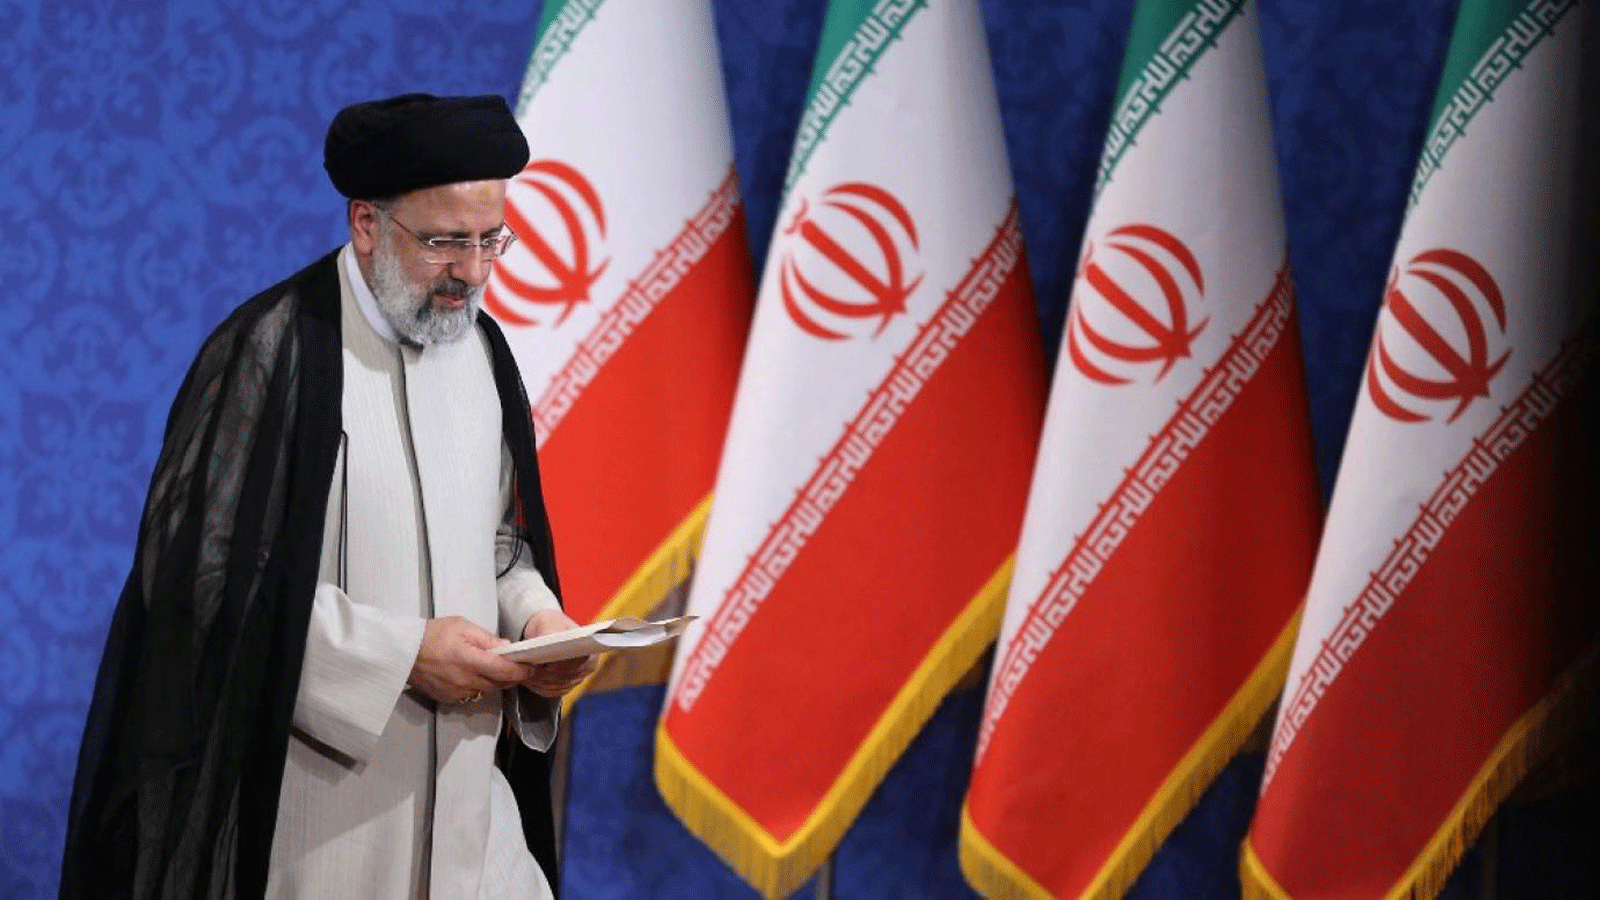 إبراهيم رئيسي خلال مؤتمره الصحفي الأول كرئيس منتخب في العاصمة الإيرانية طهران في 21 حزيران/يونيو 2021